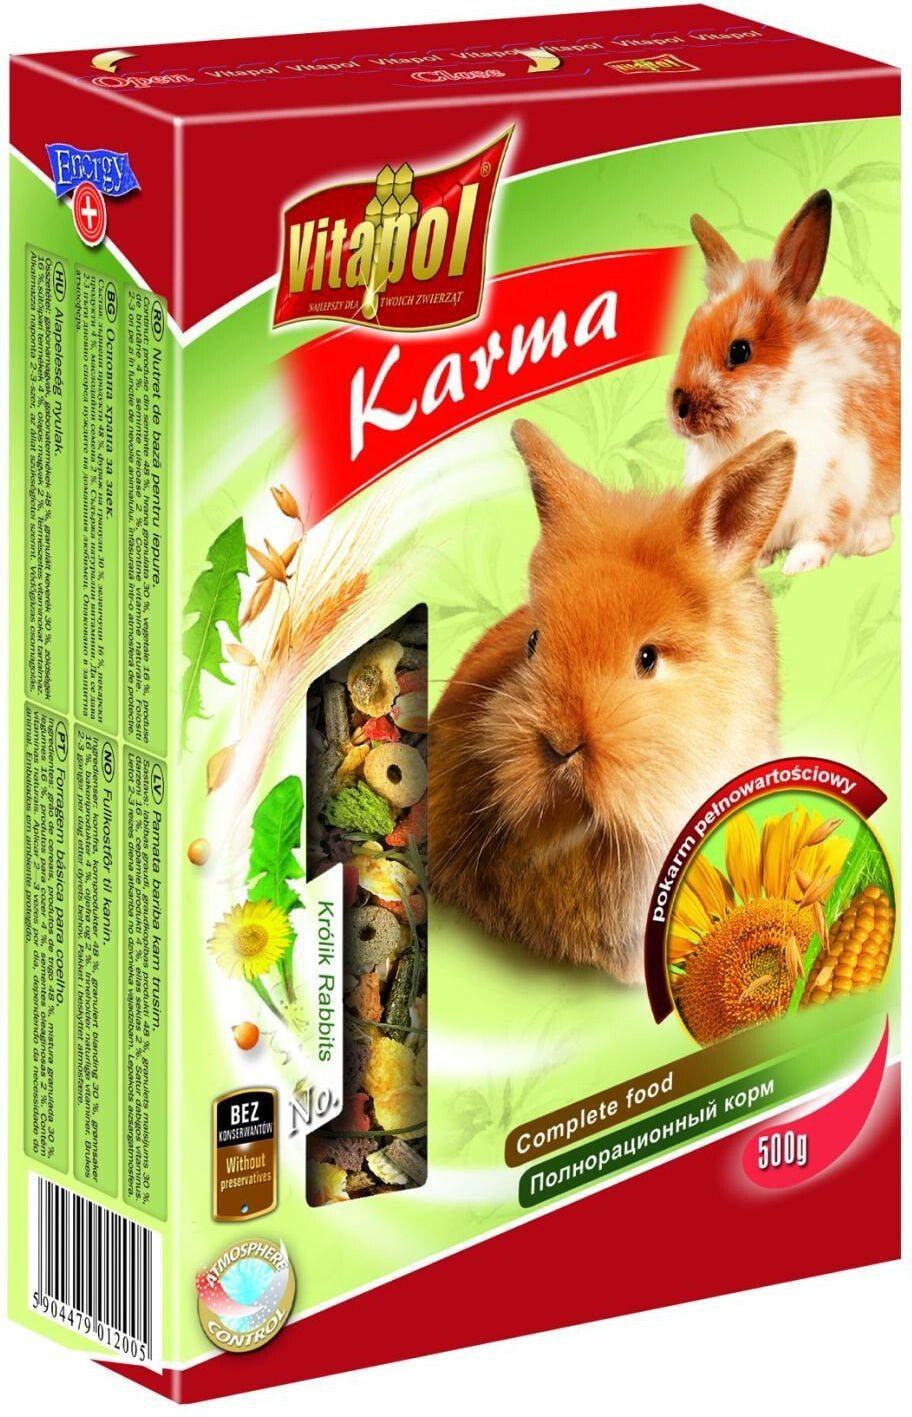 Vitapol Karma pełnoporcjowa dla królika Vitapol 500g